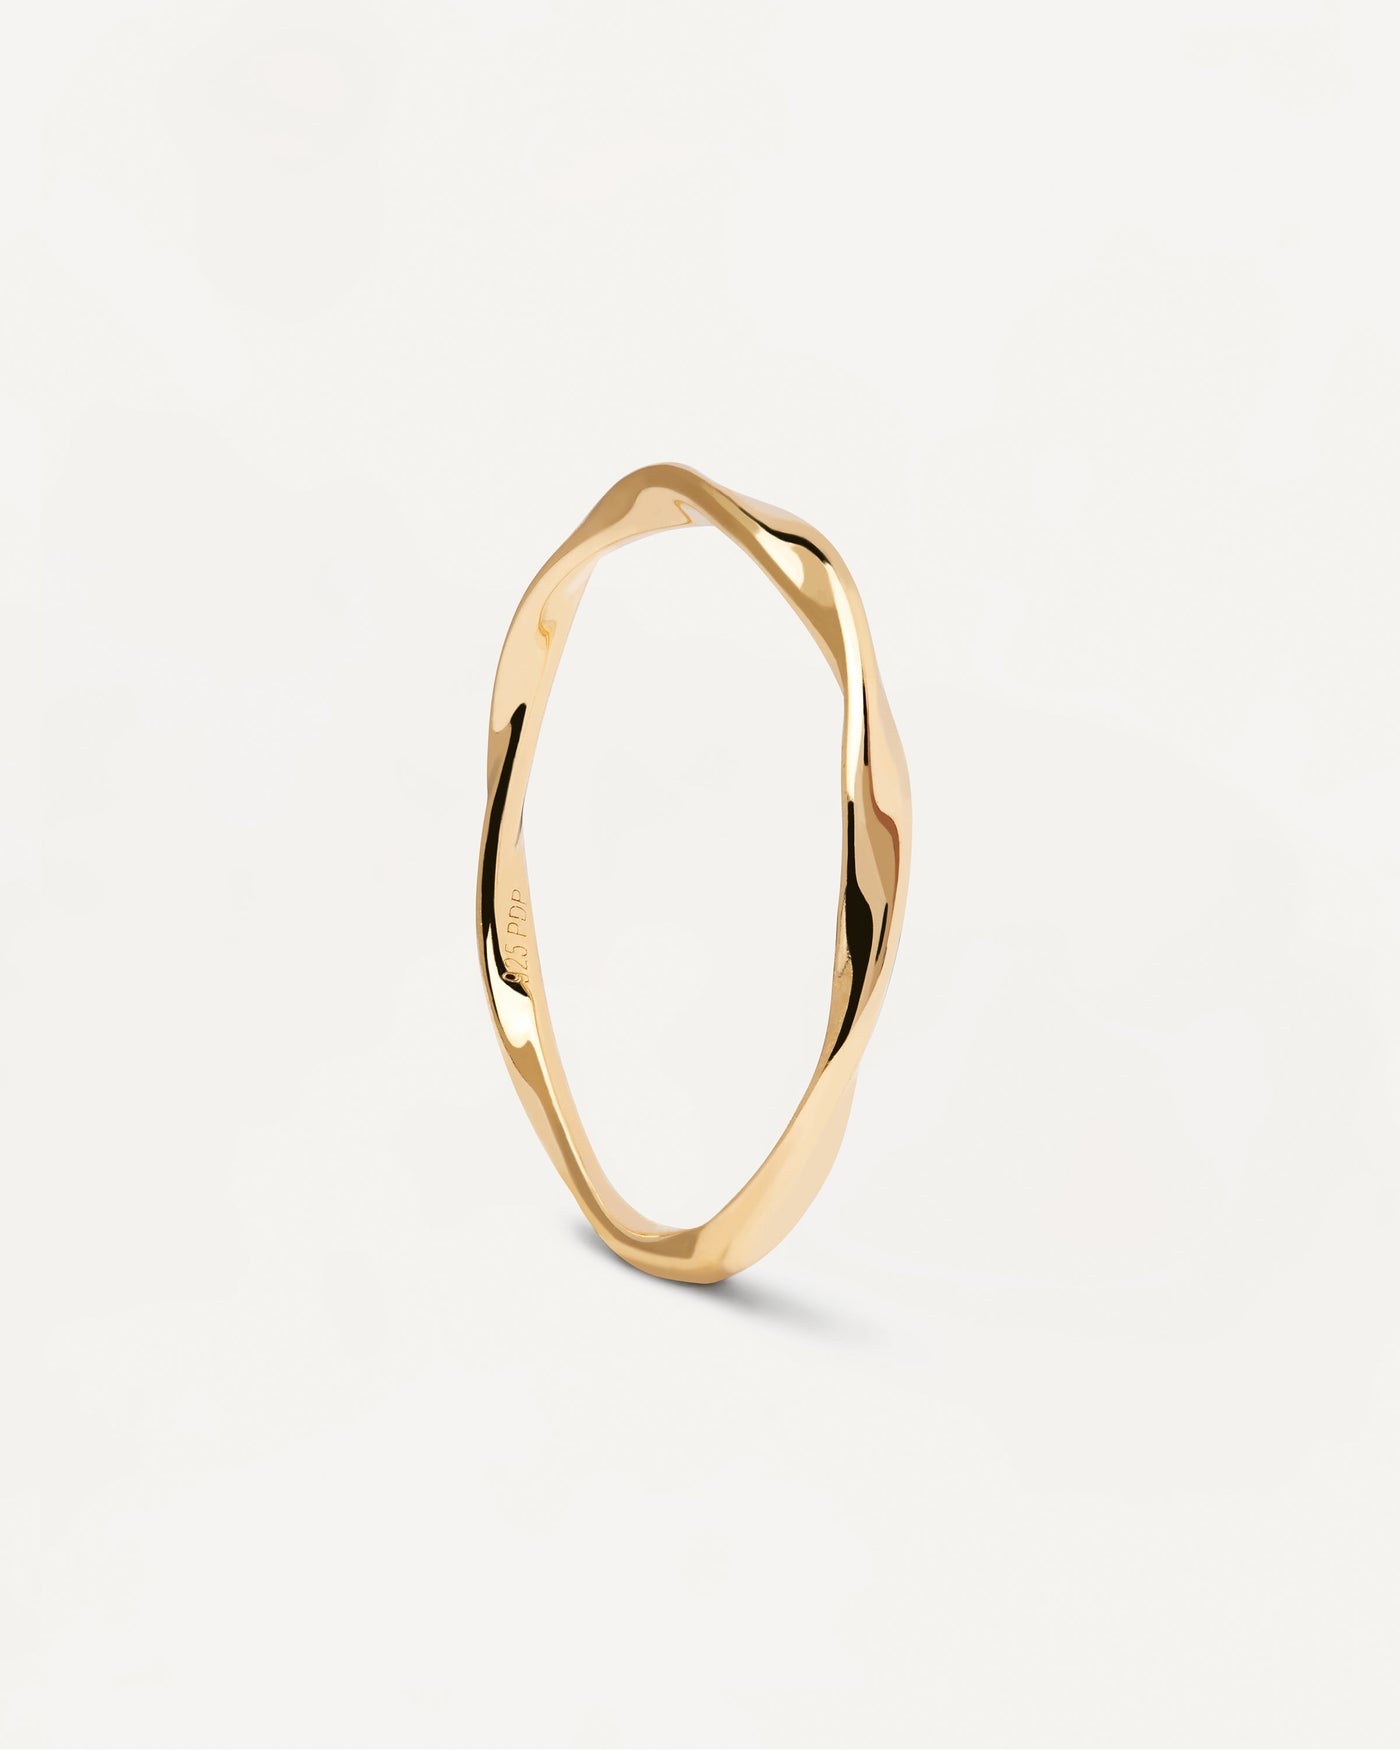 Spiral Ring. Gedrehter Ring aus vergoldetem Sterlingsilber. Erhalten Sie die neuesten Produkte von PDPAOLA. Geben Sie Ihre Bestellung sicher auf und erhalten Sie diesen Bestseller.